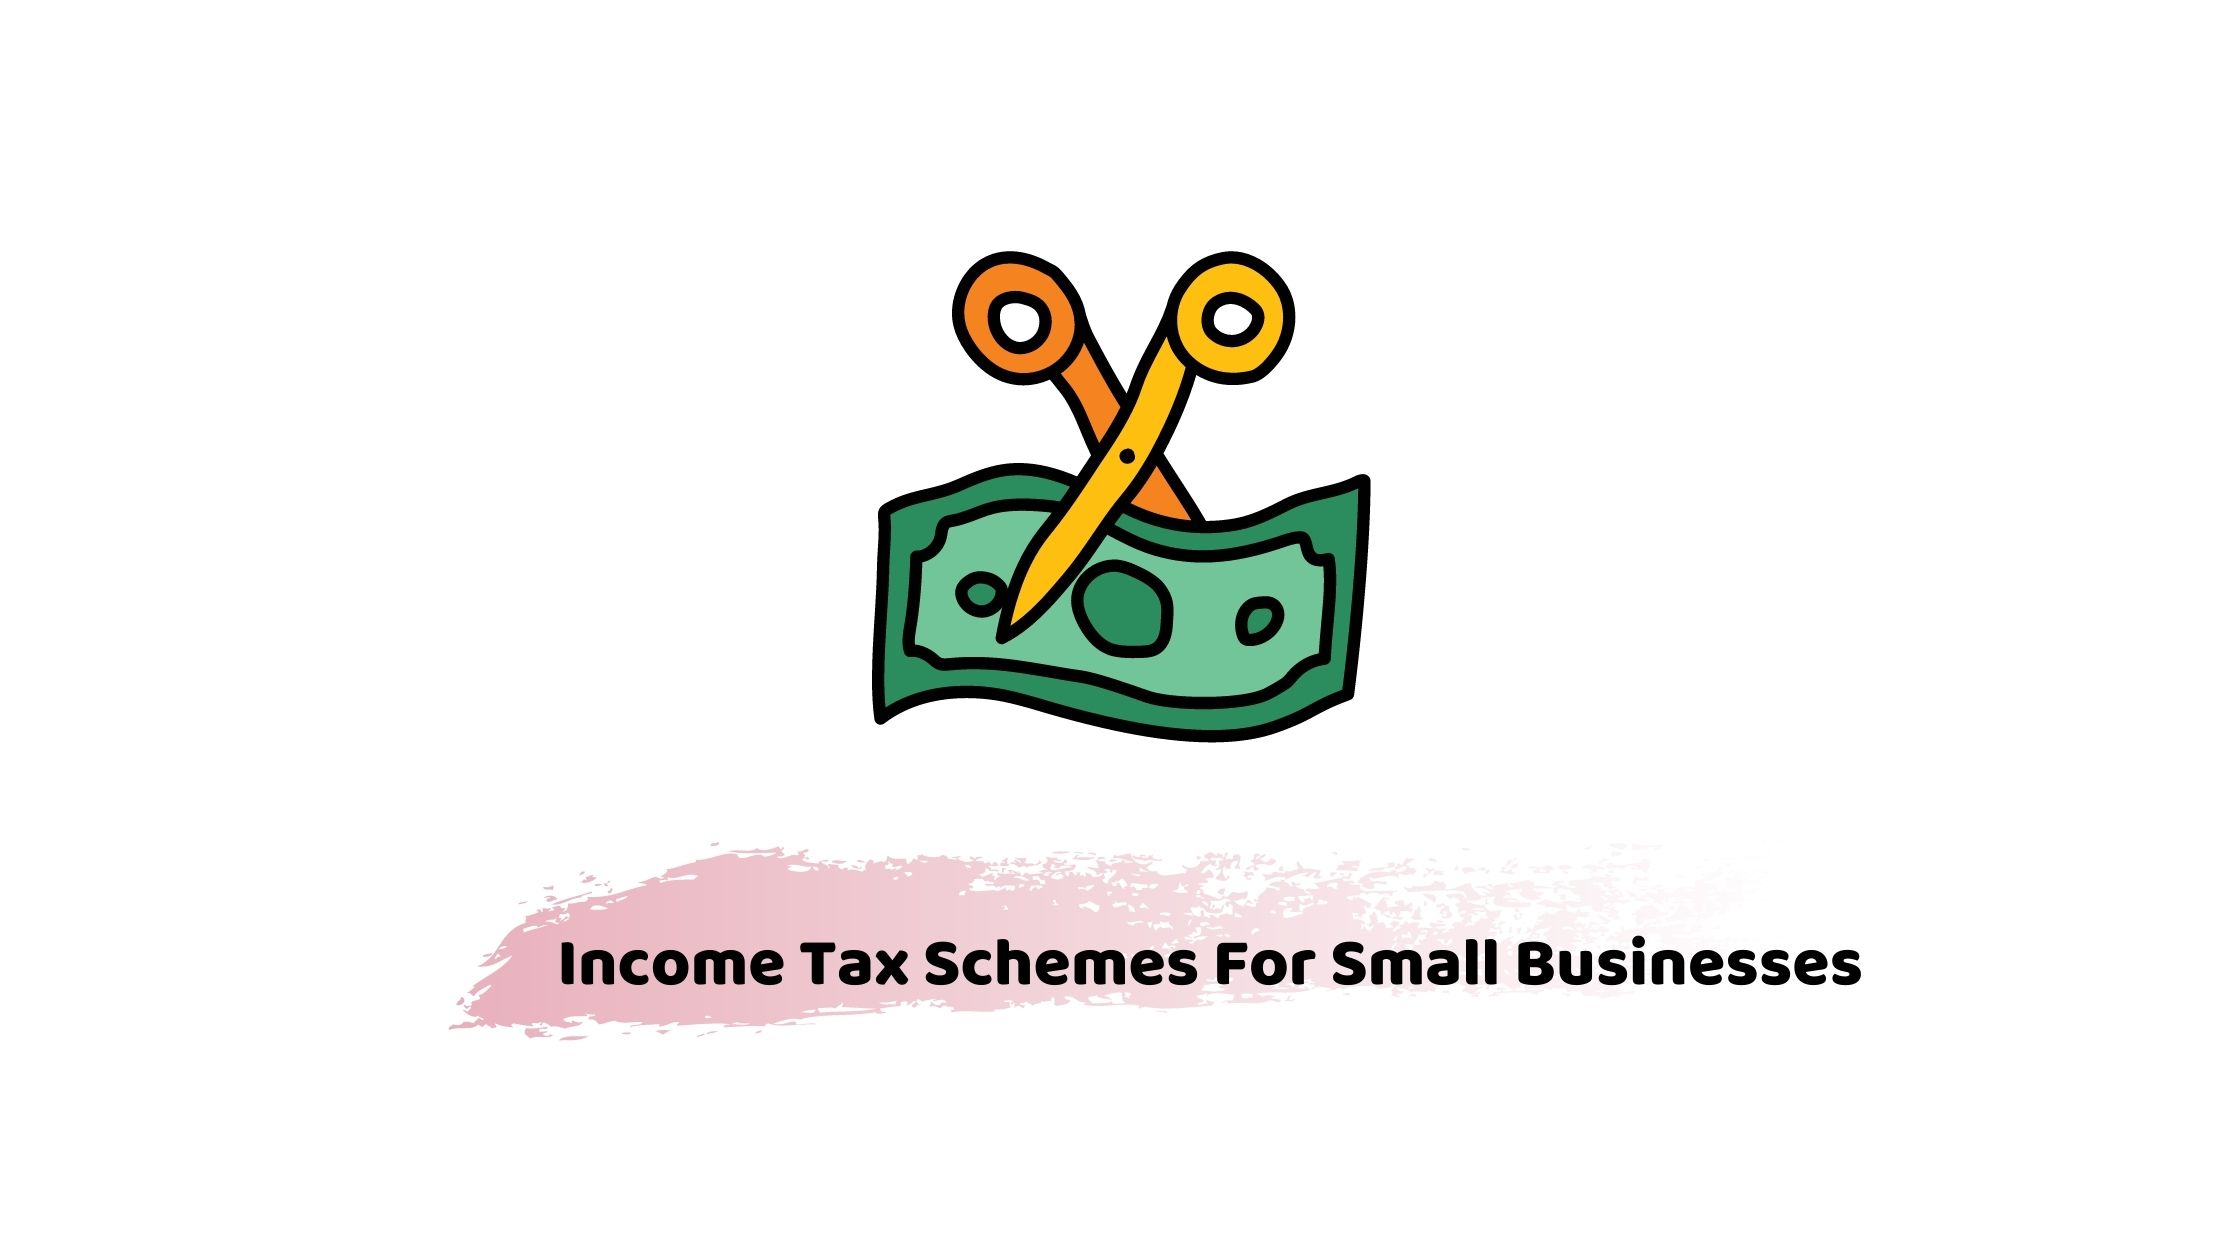 Income tax scheme